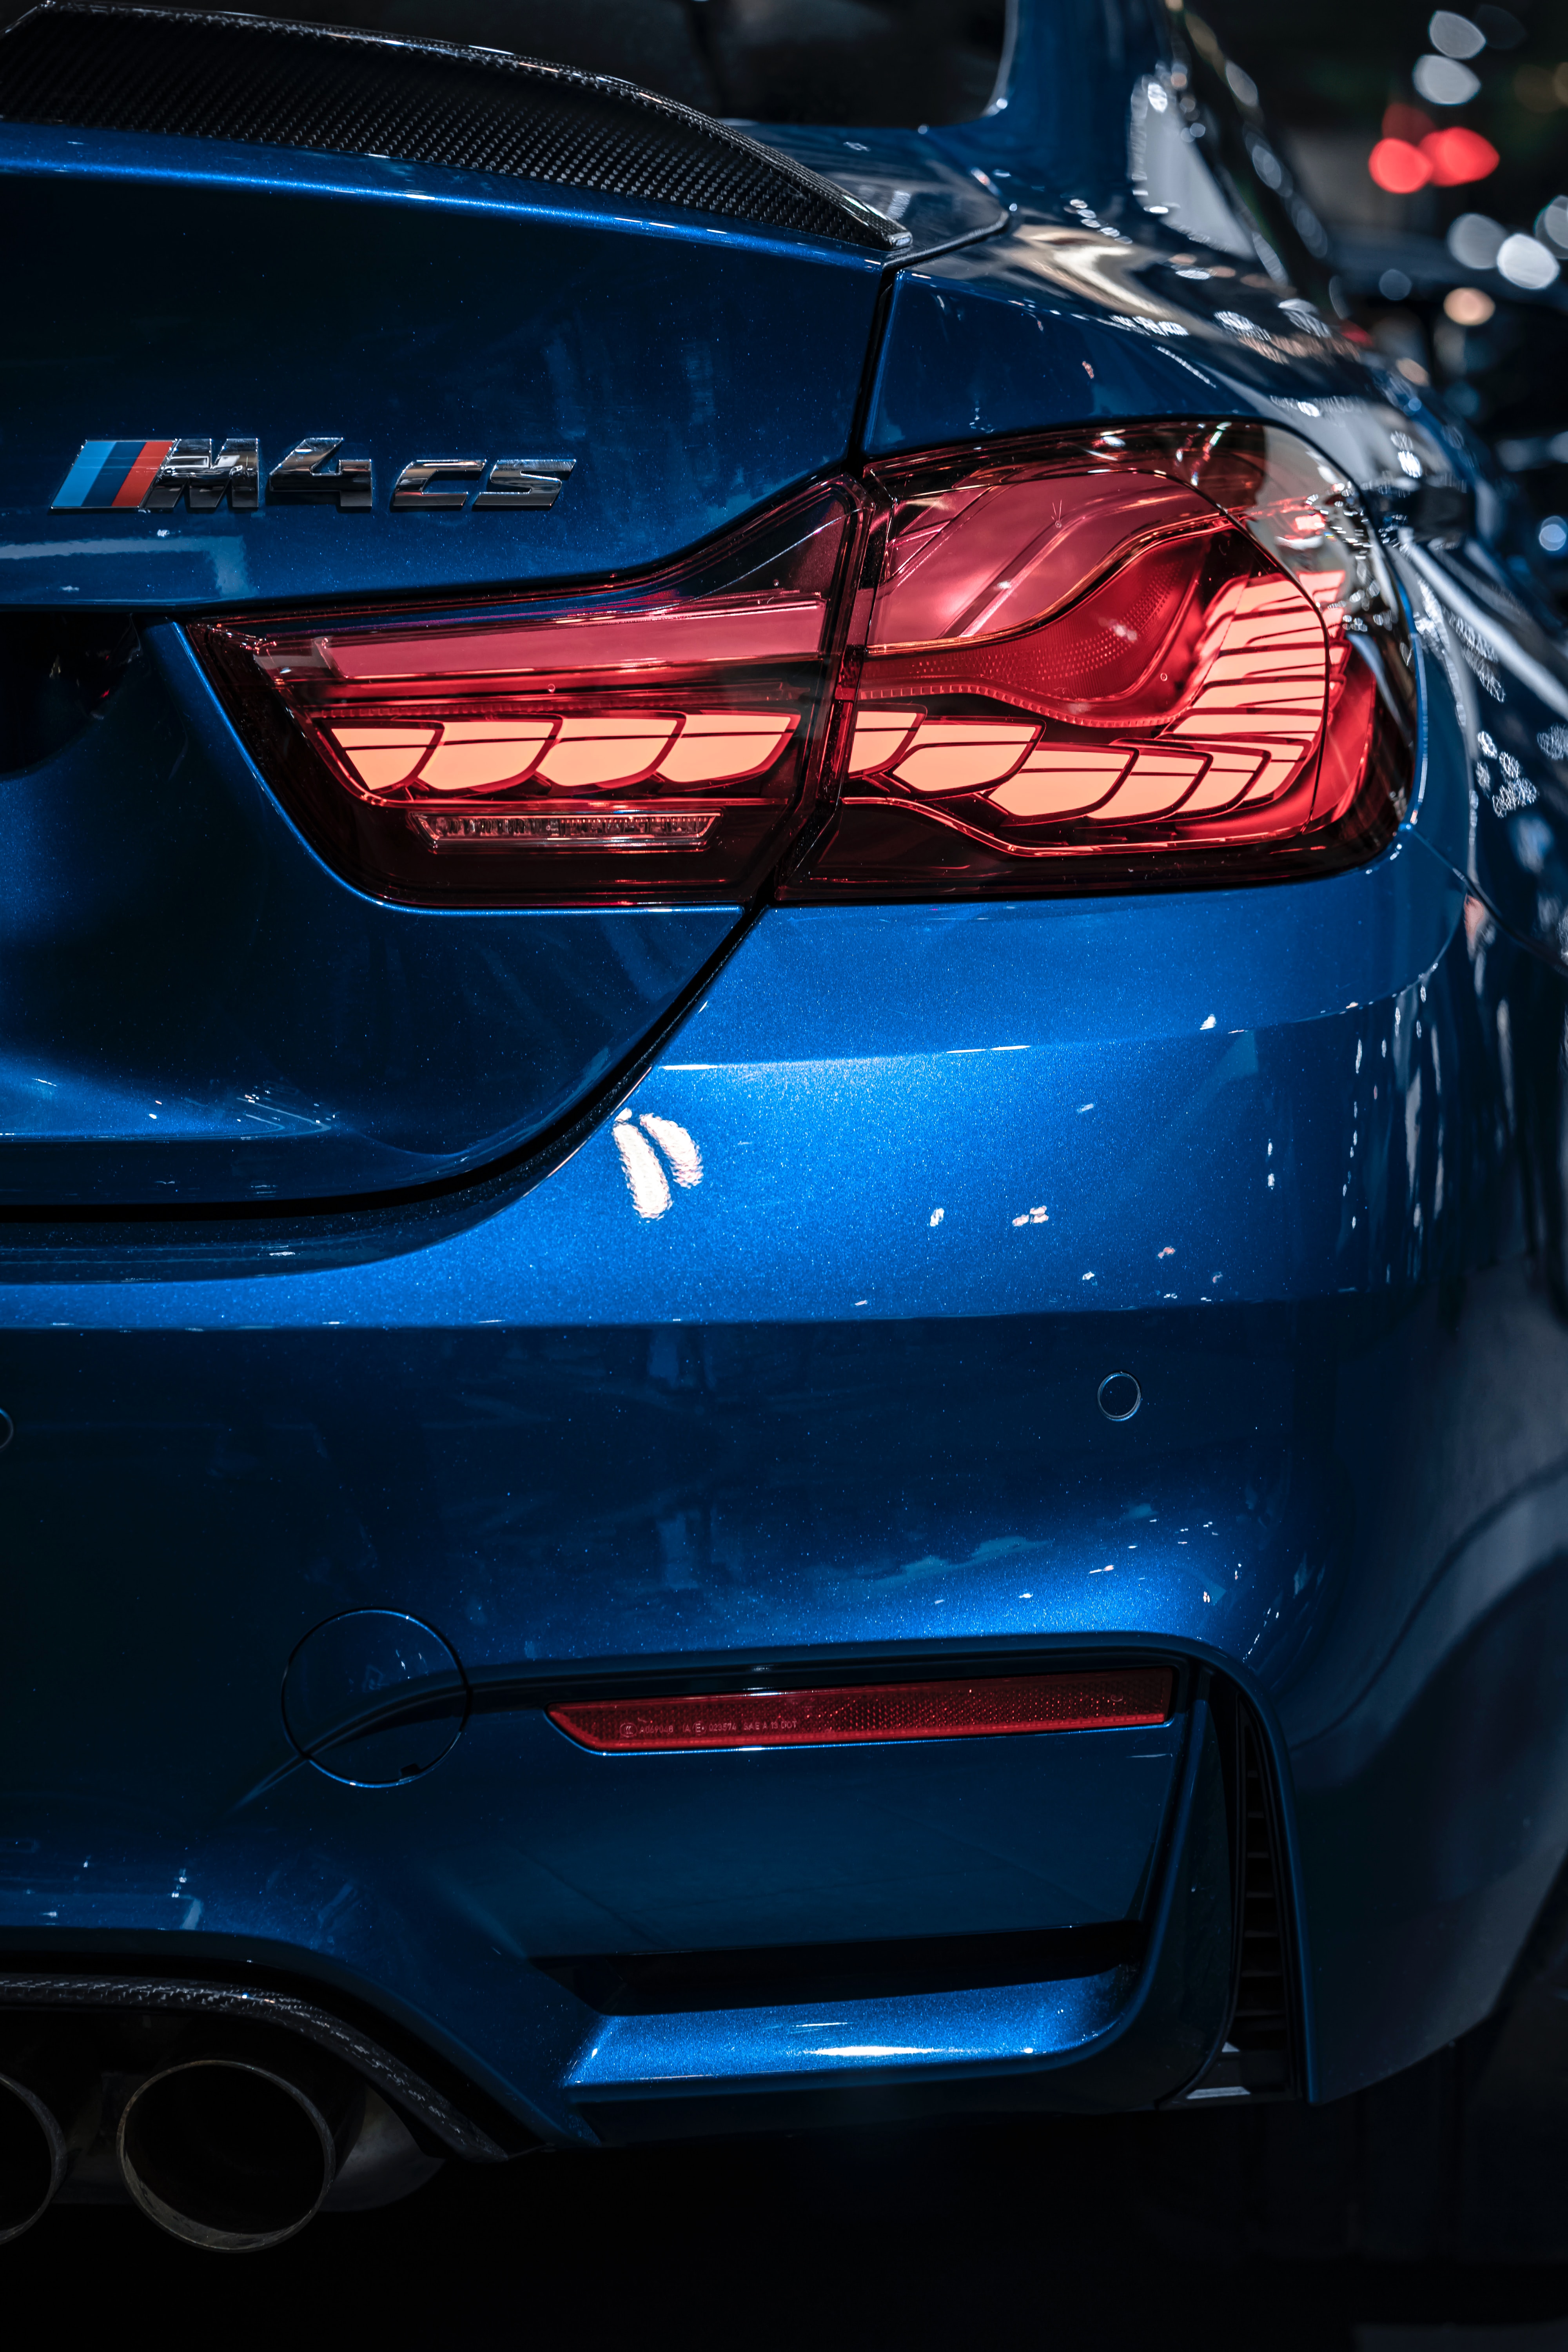 General 4000x6000 taillights rear view blue cars portrait display car shiny BMW BMW F80/F82/F83